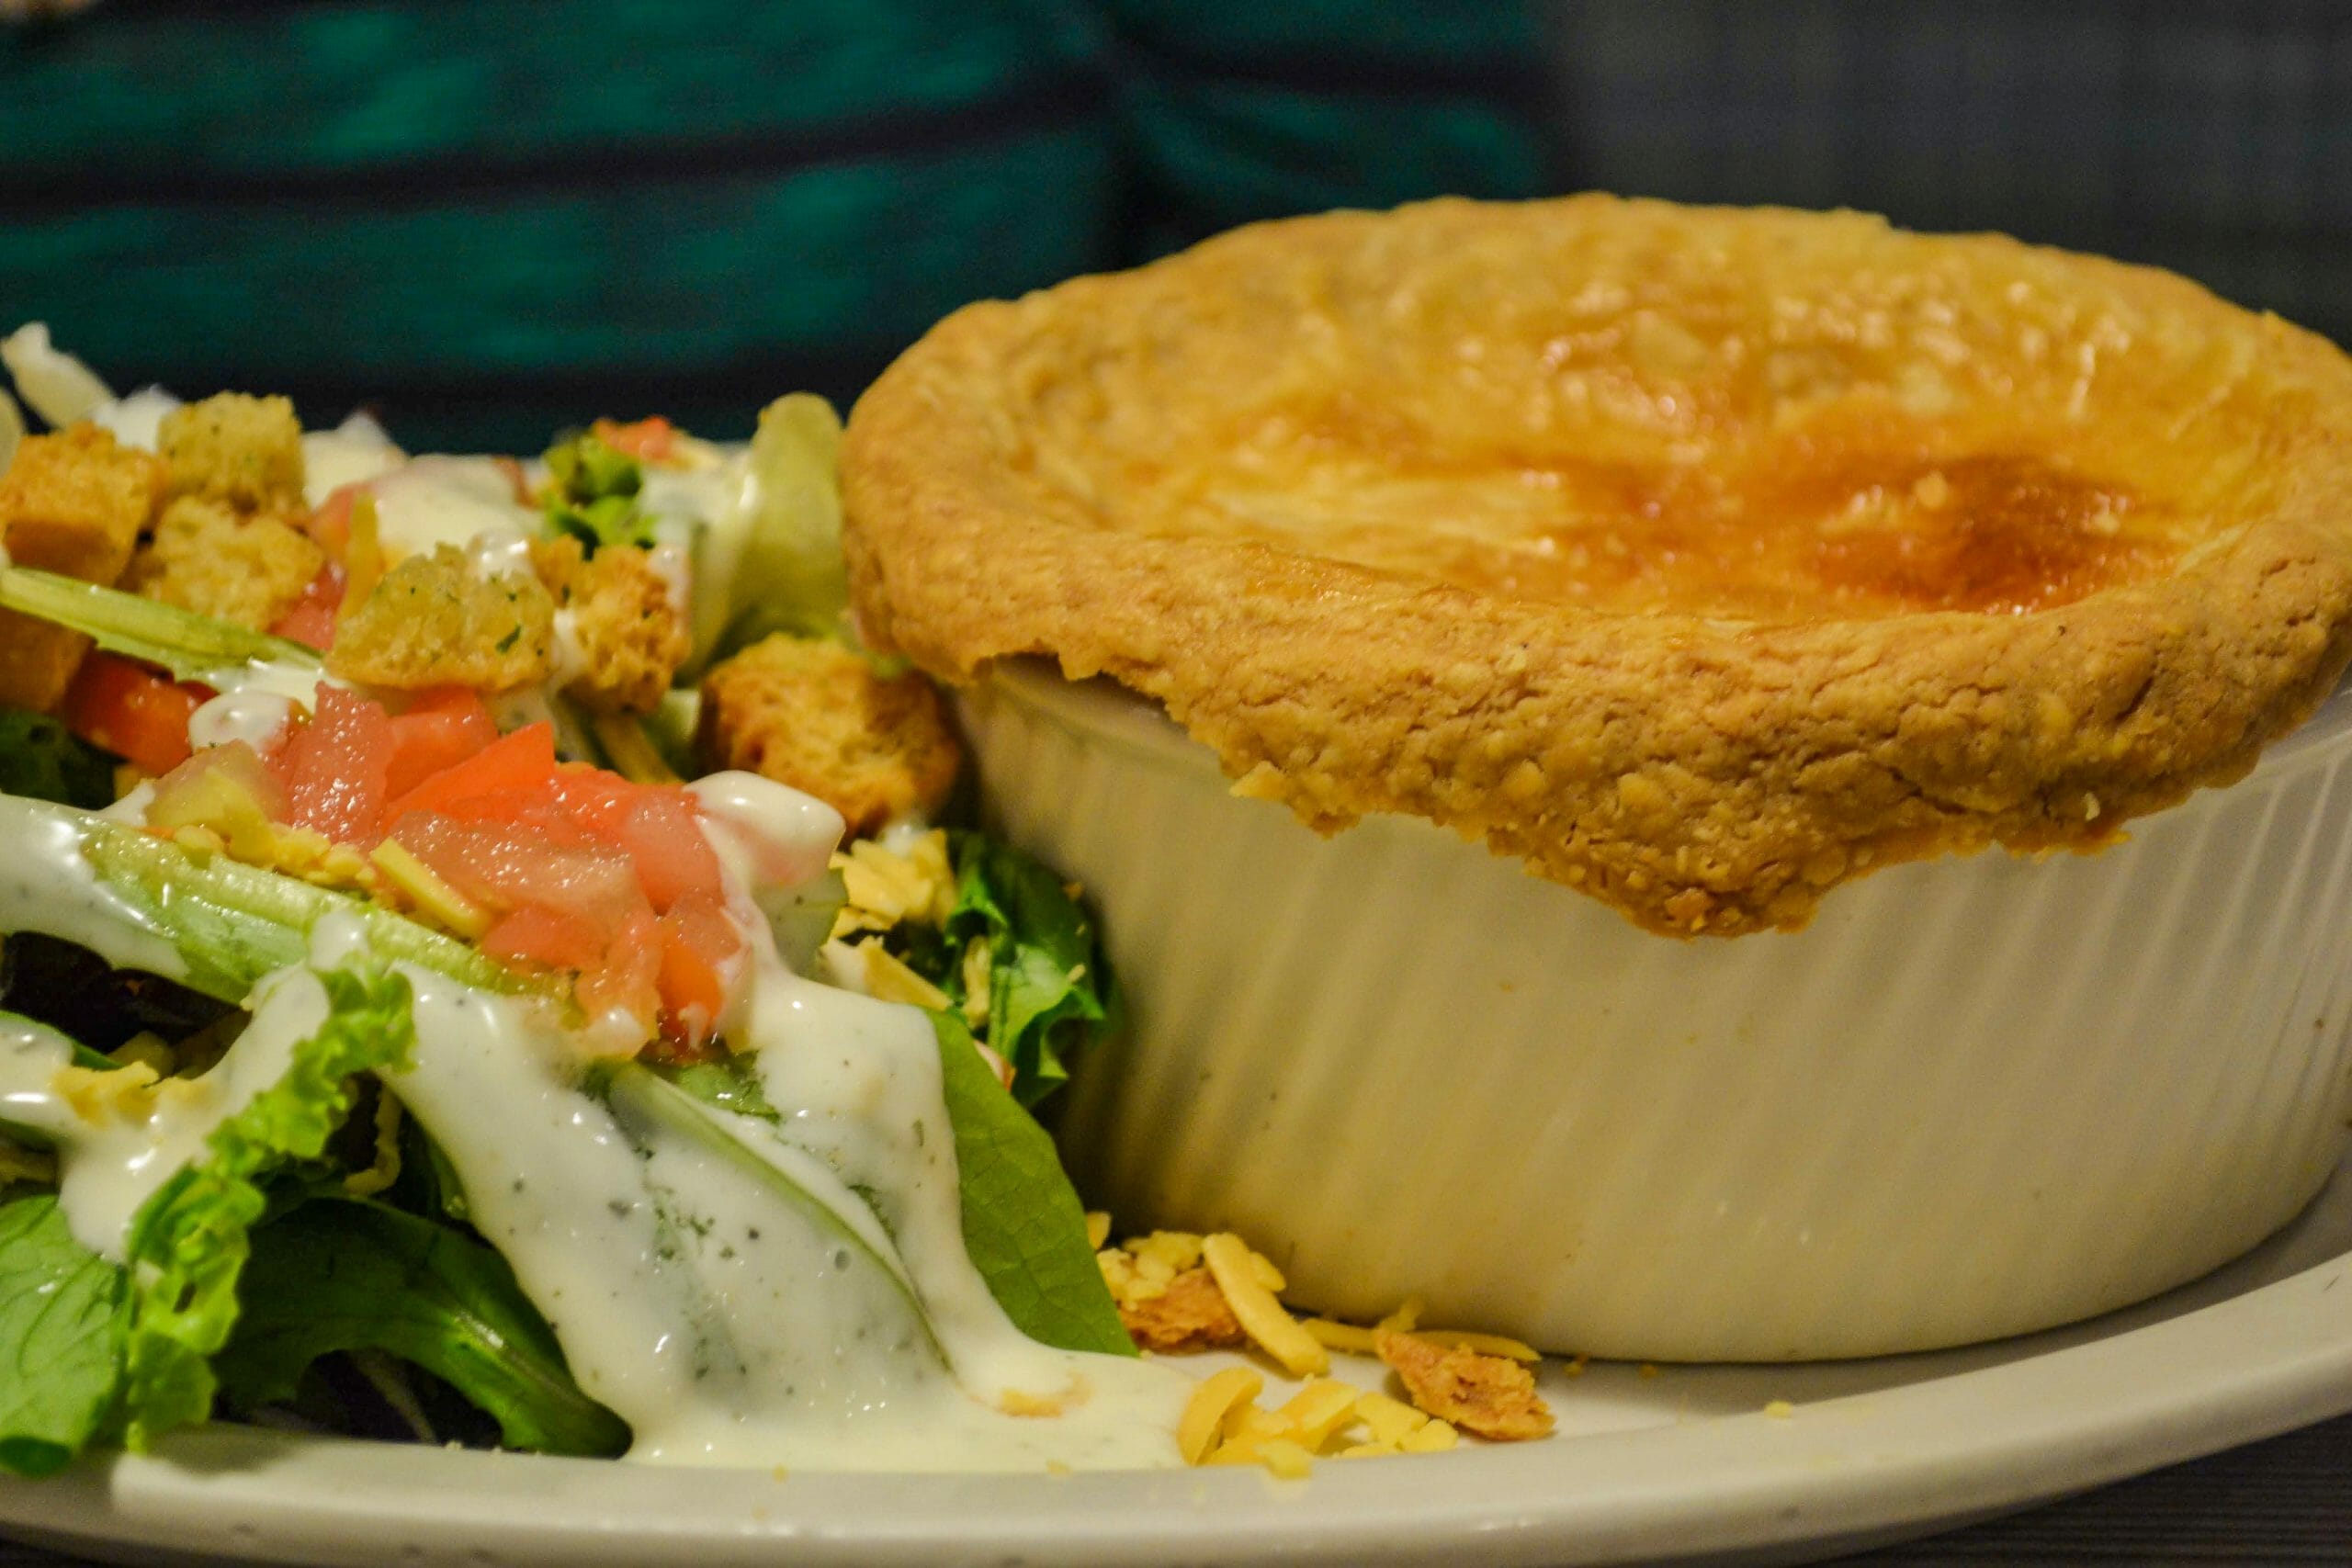 Foto do prato com a chicken pot pie do Perkins, com um pouco de salada acompanhando